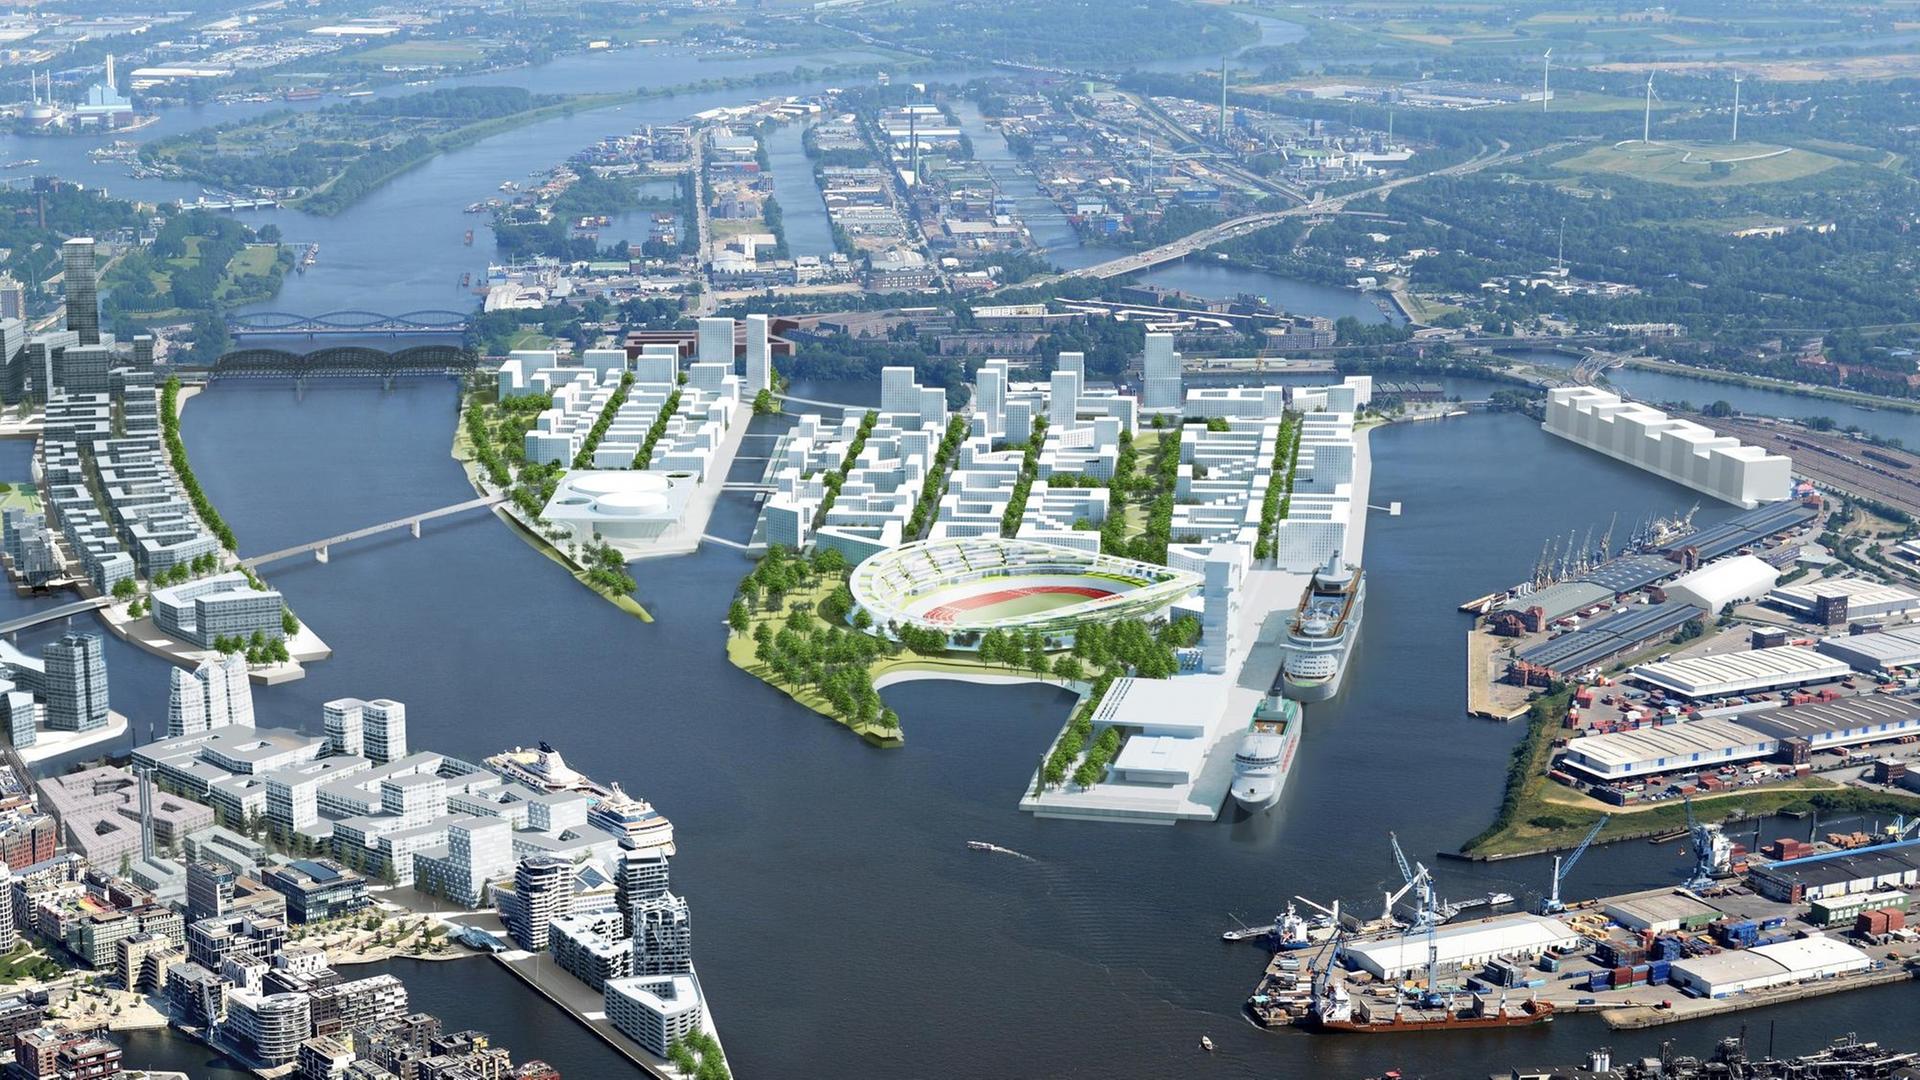 Zu sehen ist eine Foto-Simulation, die ein Stadion und neue Wohnhäuser zeigt. Alles steht im Hamburger Hafen auf der Elbinsel "Kleiner Grasbrook."